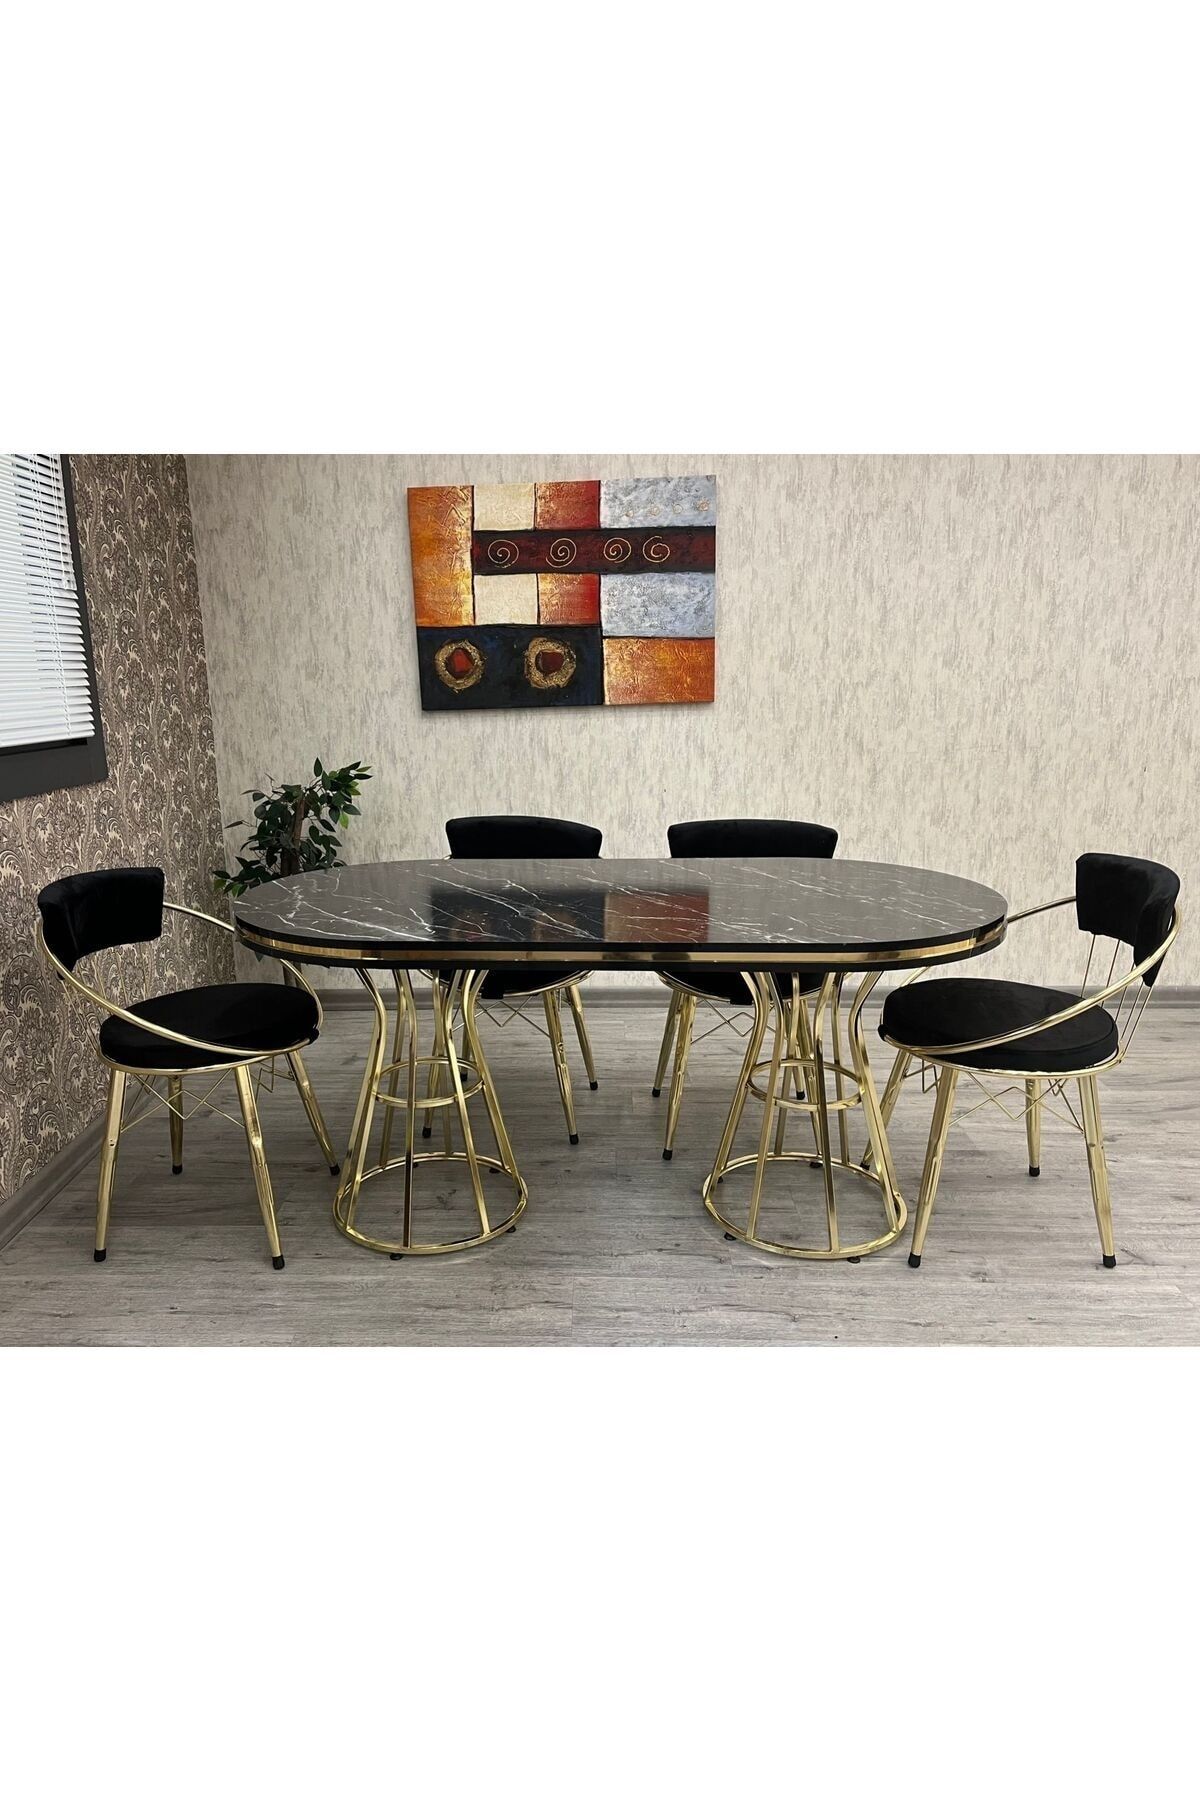 BY ORHAN GÜZEL Mutfak Masası Takımı ,salon Masası Takımı, 6 Kişilik Venüs Gold Salon Masası Takımı